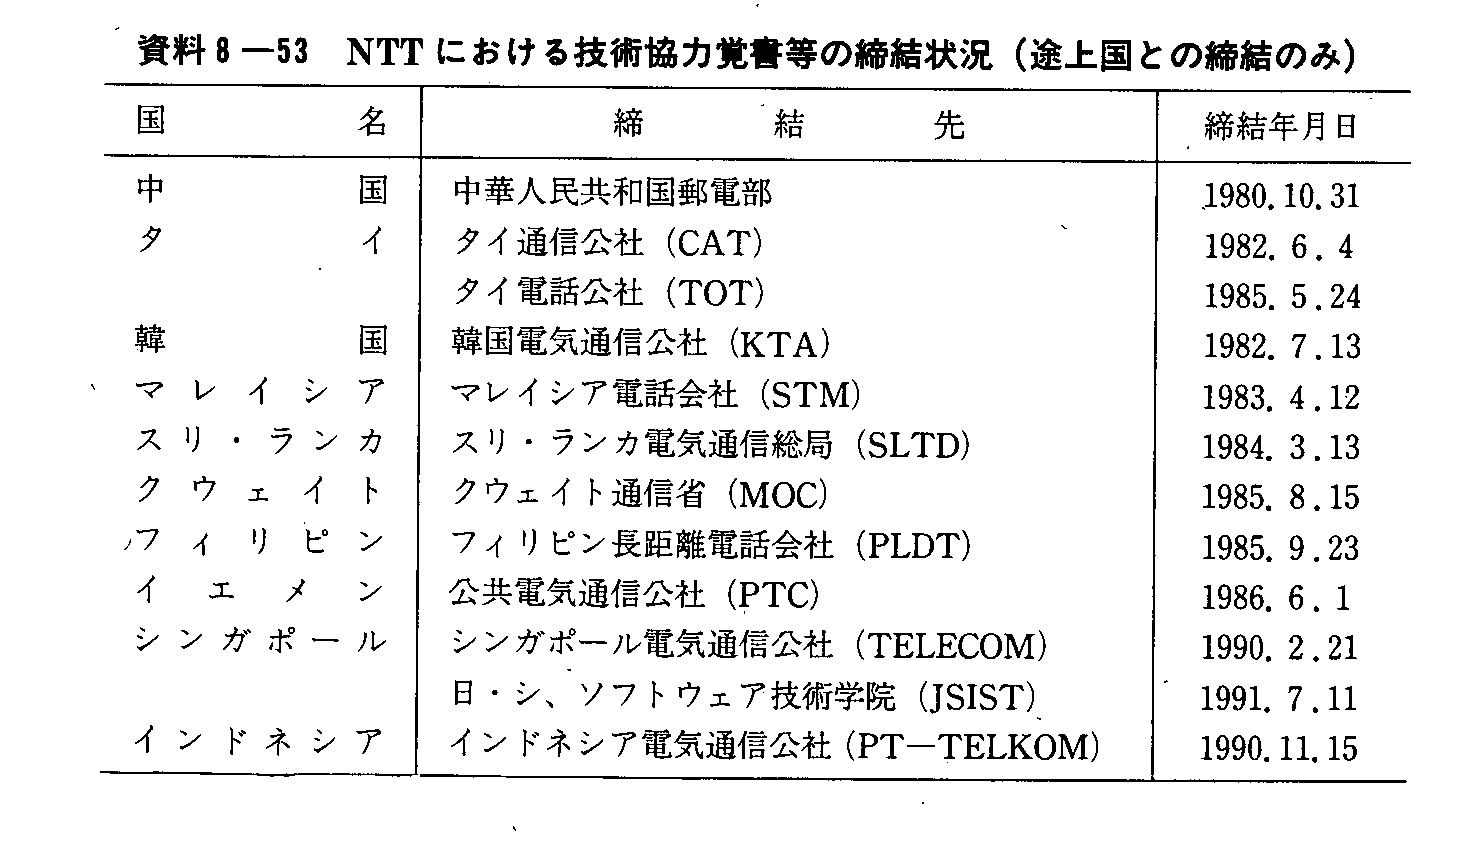 資料8-53 NTTにおける技術協力覚書等の締結状況(途上国との締結のみ)